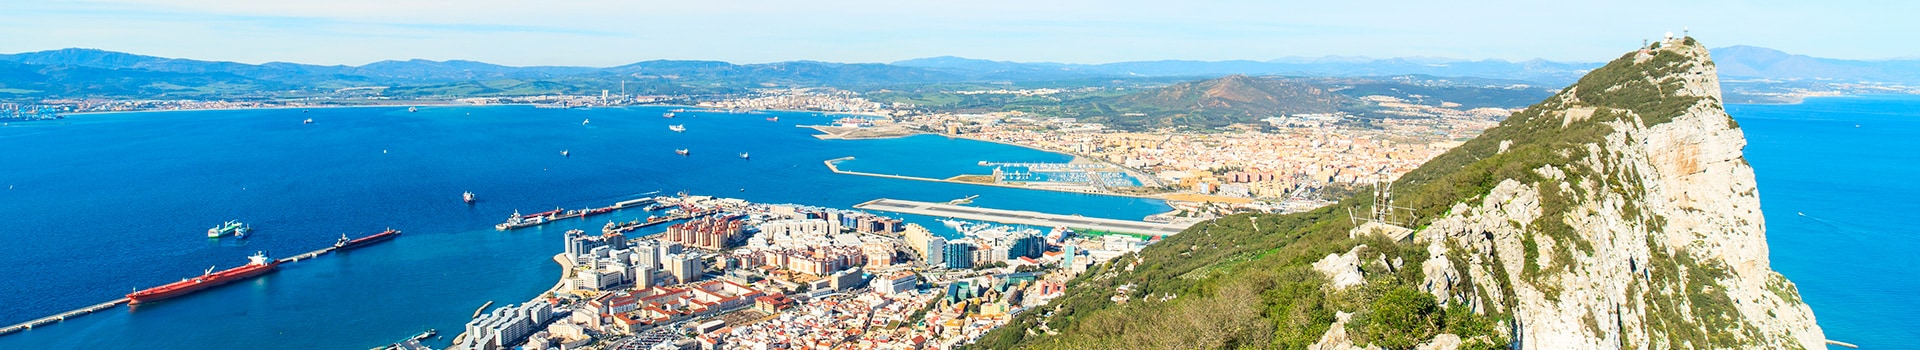 Tenerife - Gibraltar